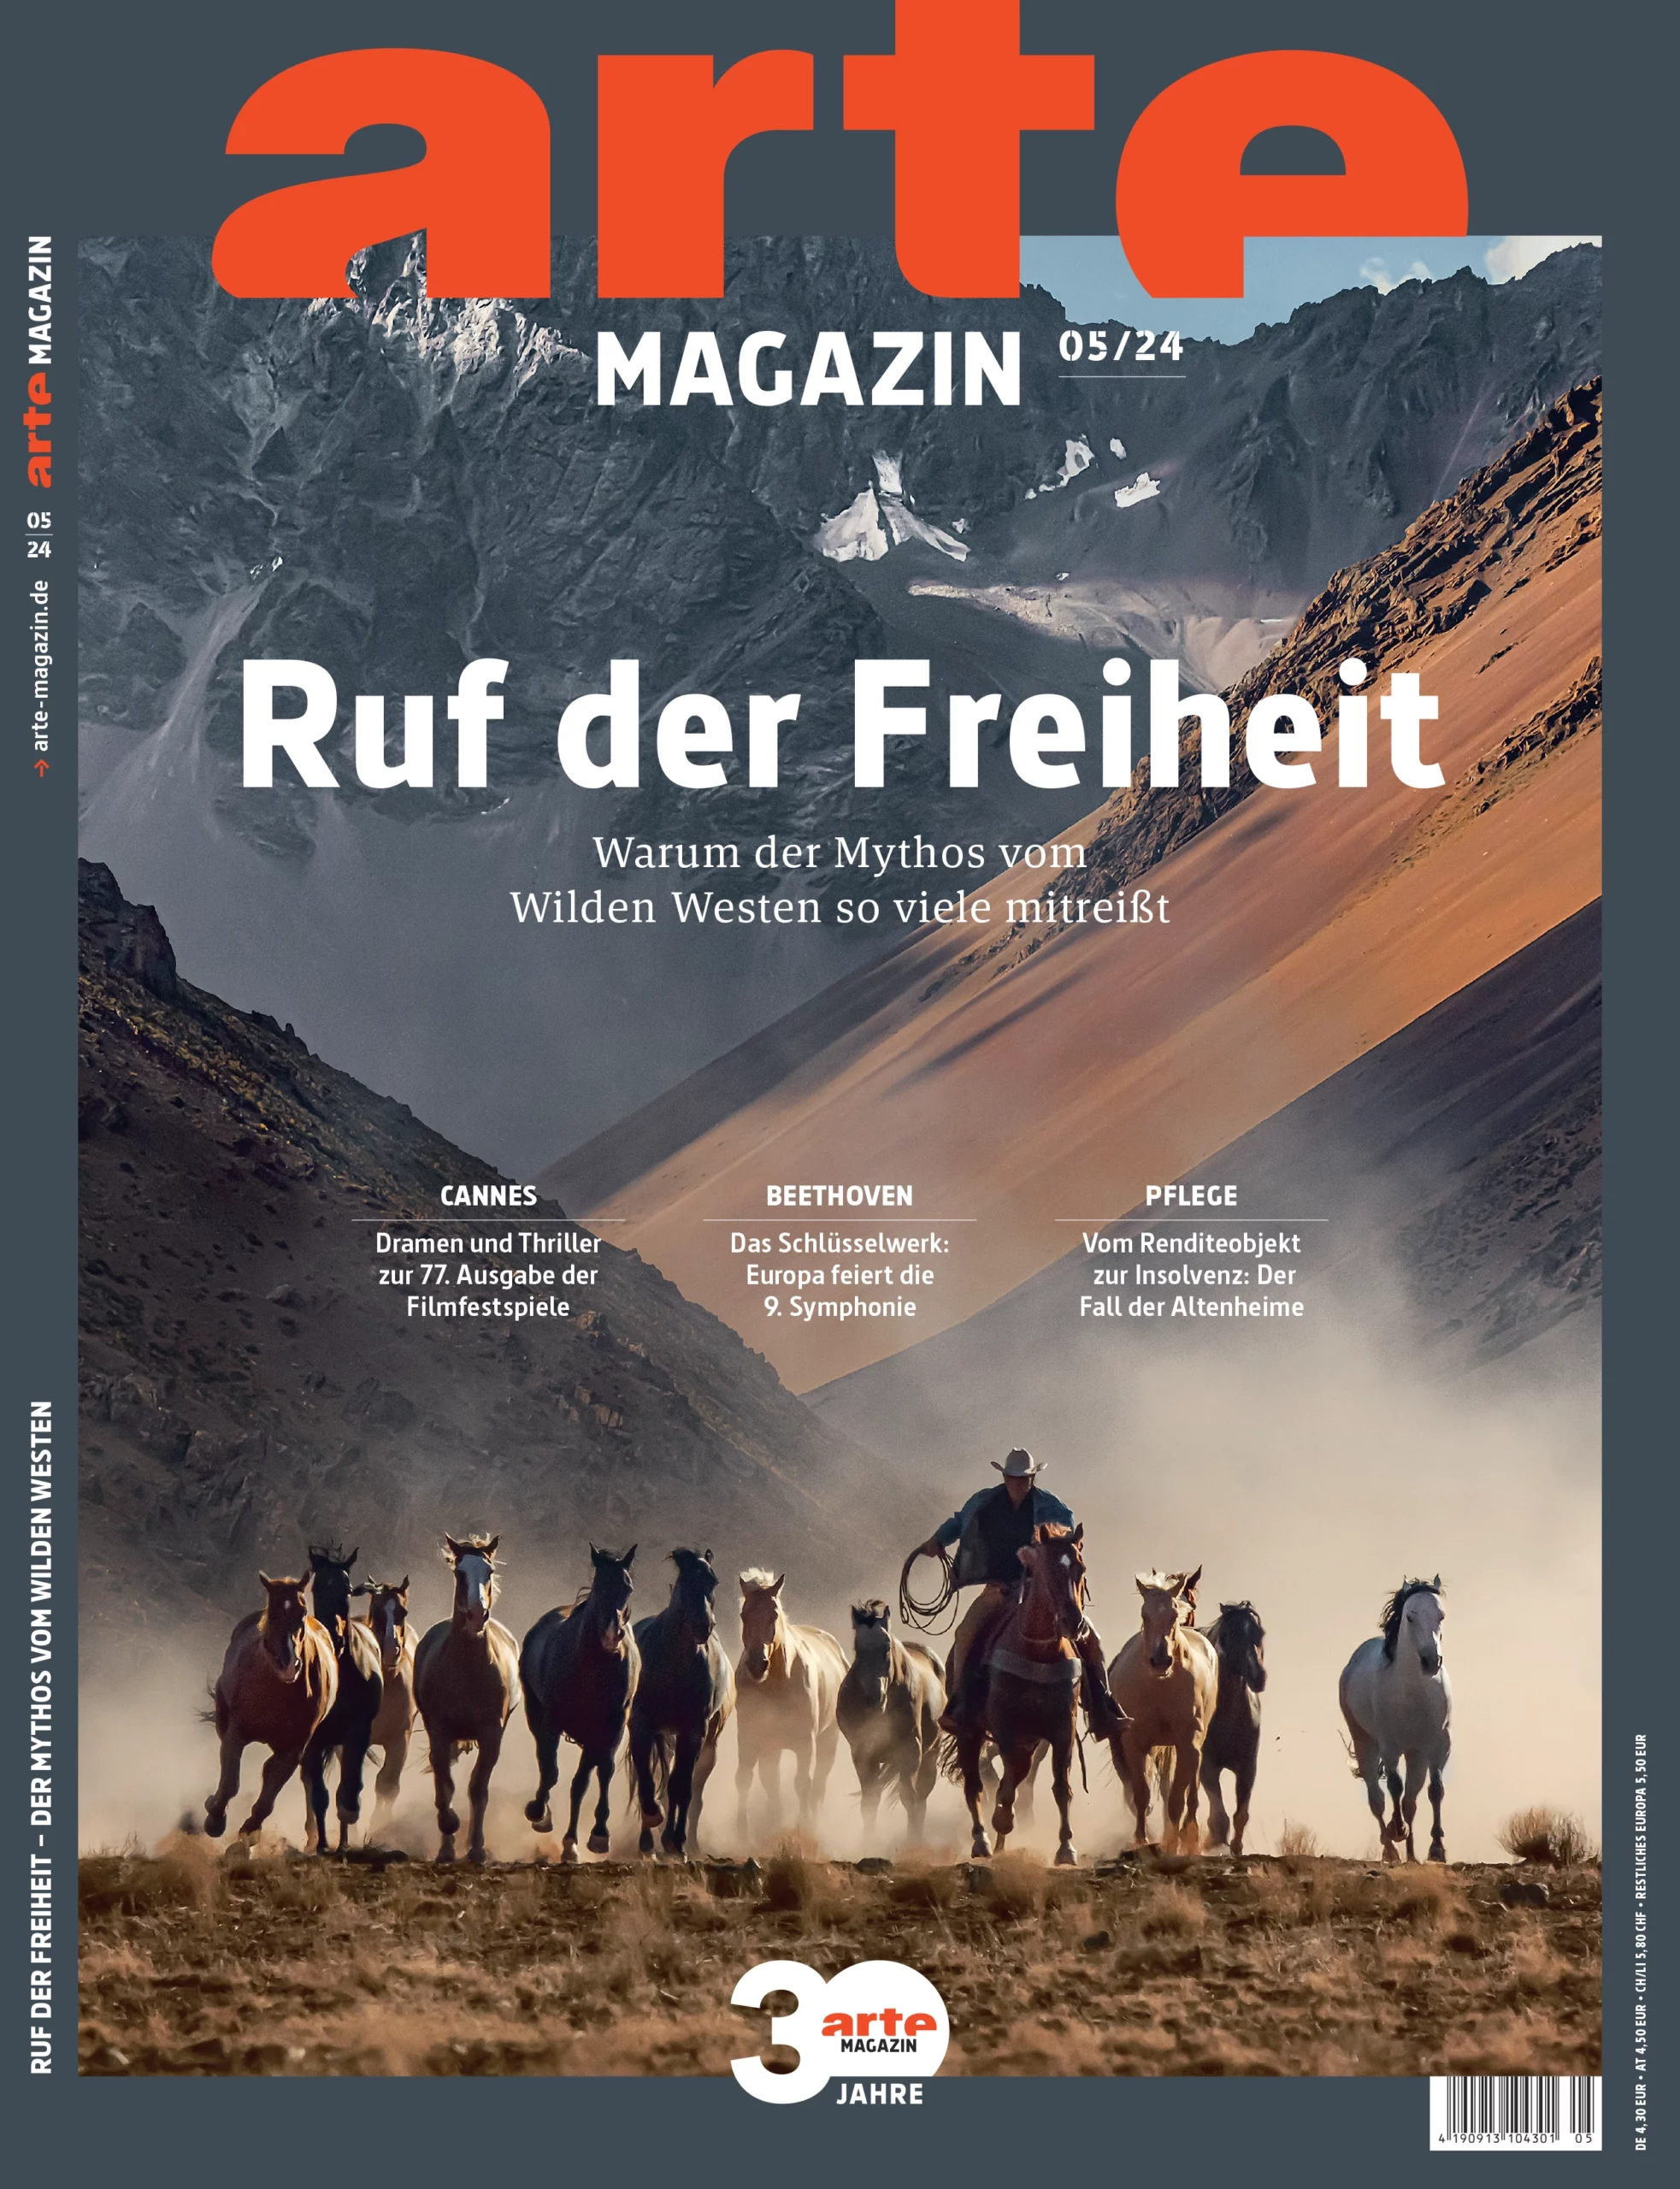 ARTE Magazin Cover mit Pferden und Cowboy vor bergiger Landschaft